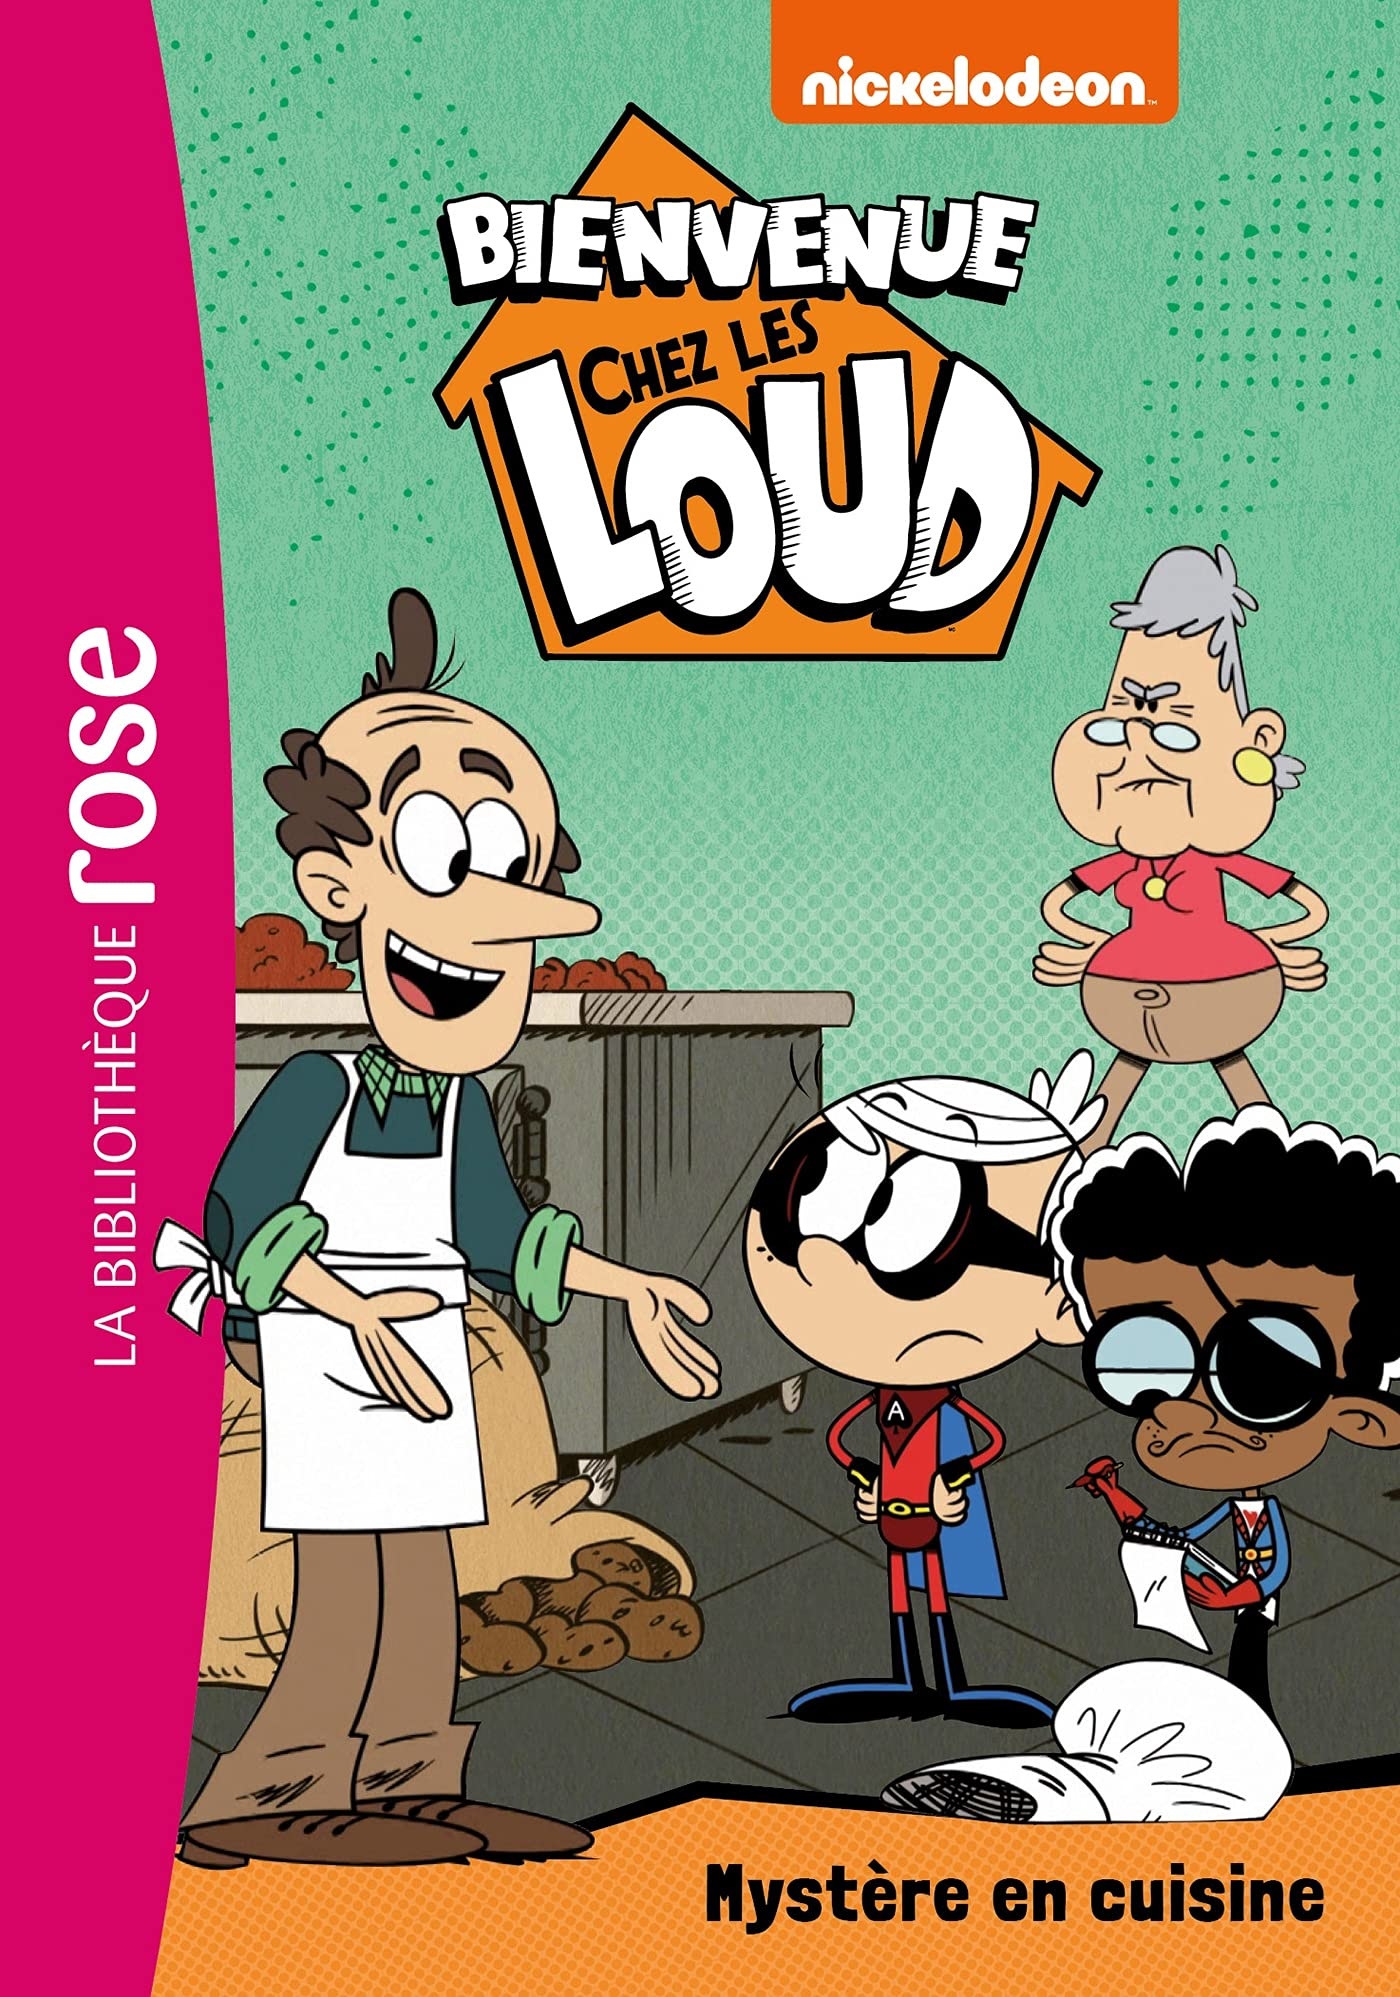 Bienvenue chez les Loud - Mystère en cuisine, The Loud House Encyclopedia